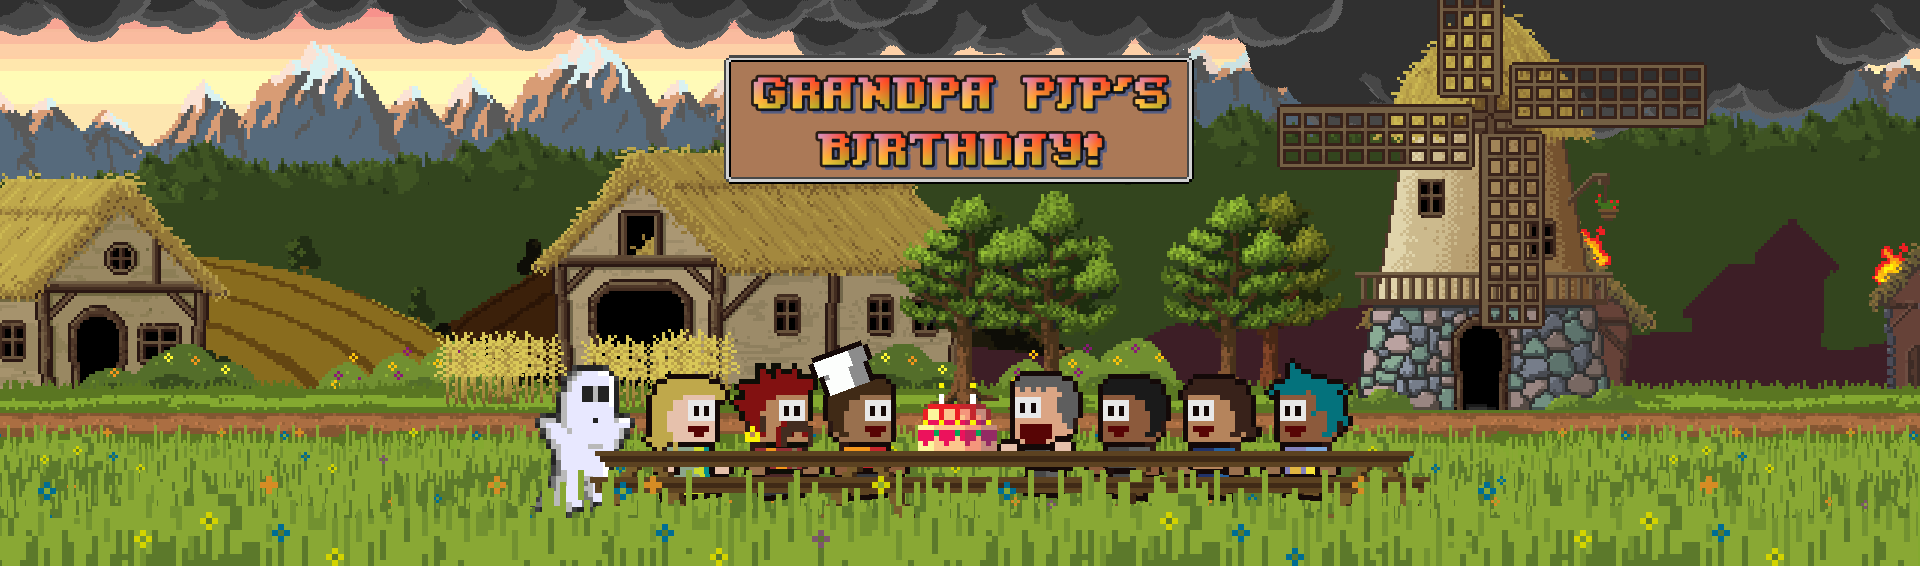 Grandpa Pip's Birthday